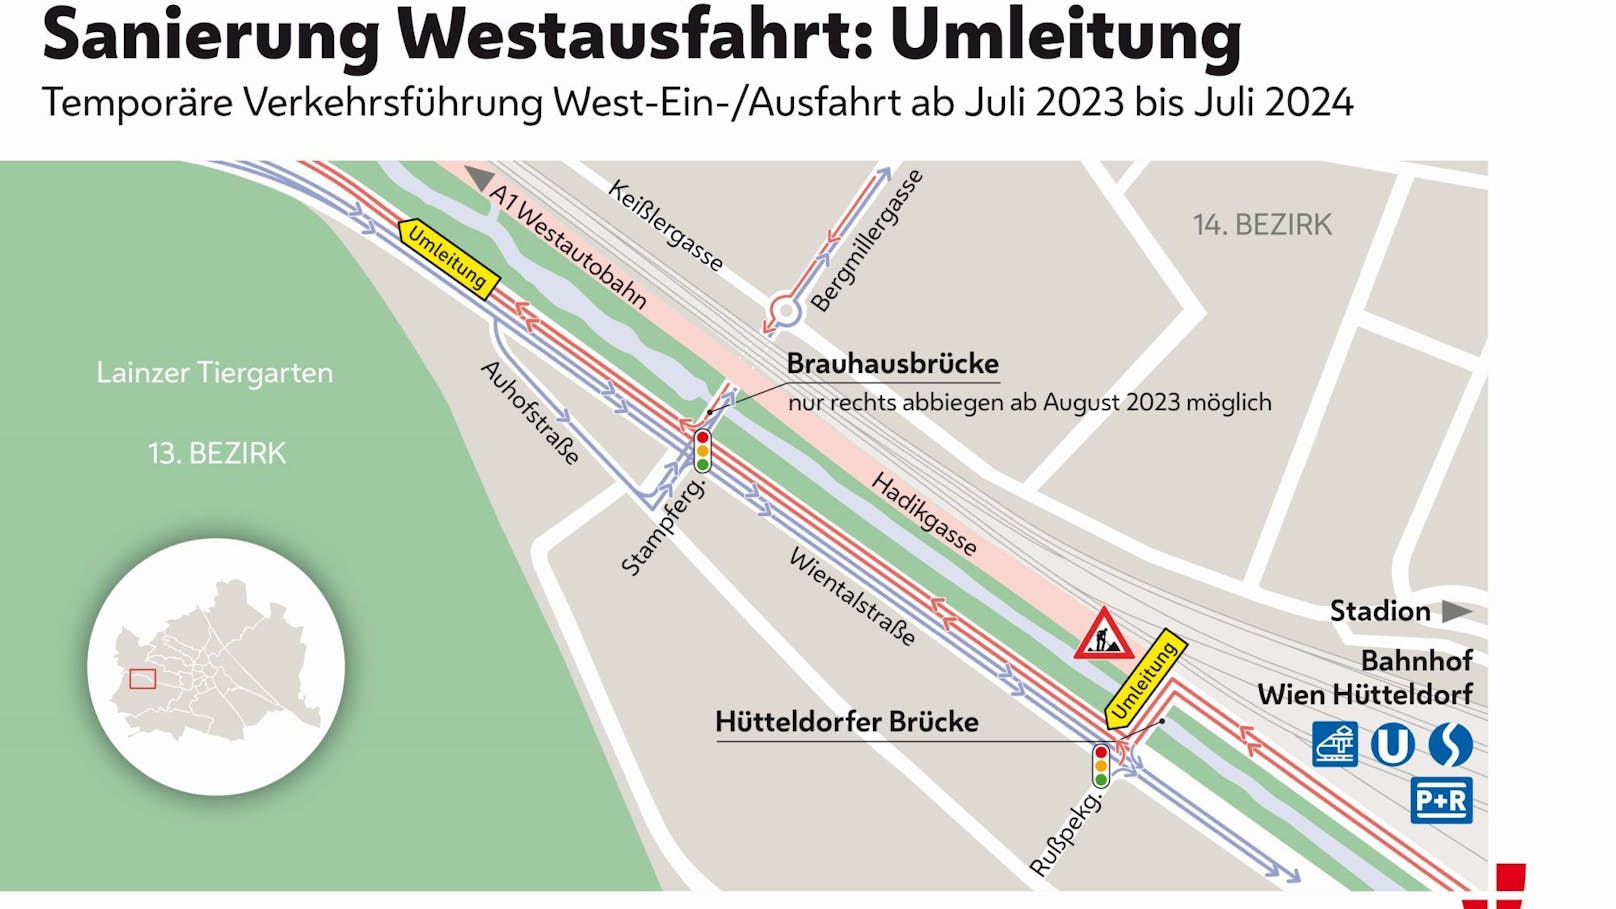 Umleitungen während der Sanierung der Wiener Westausfahrt.